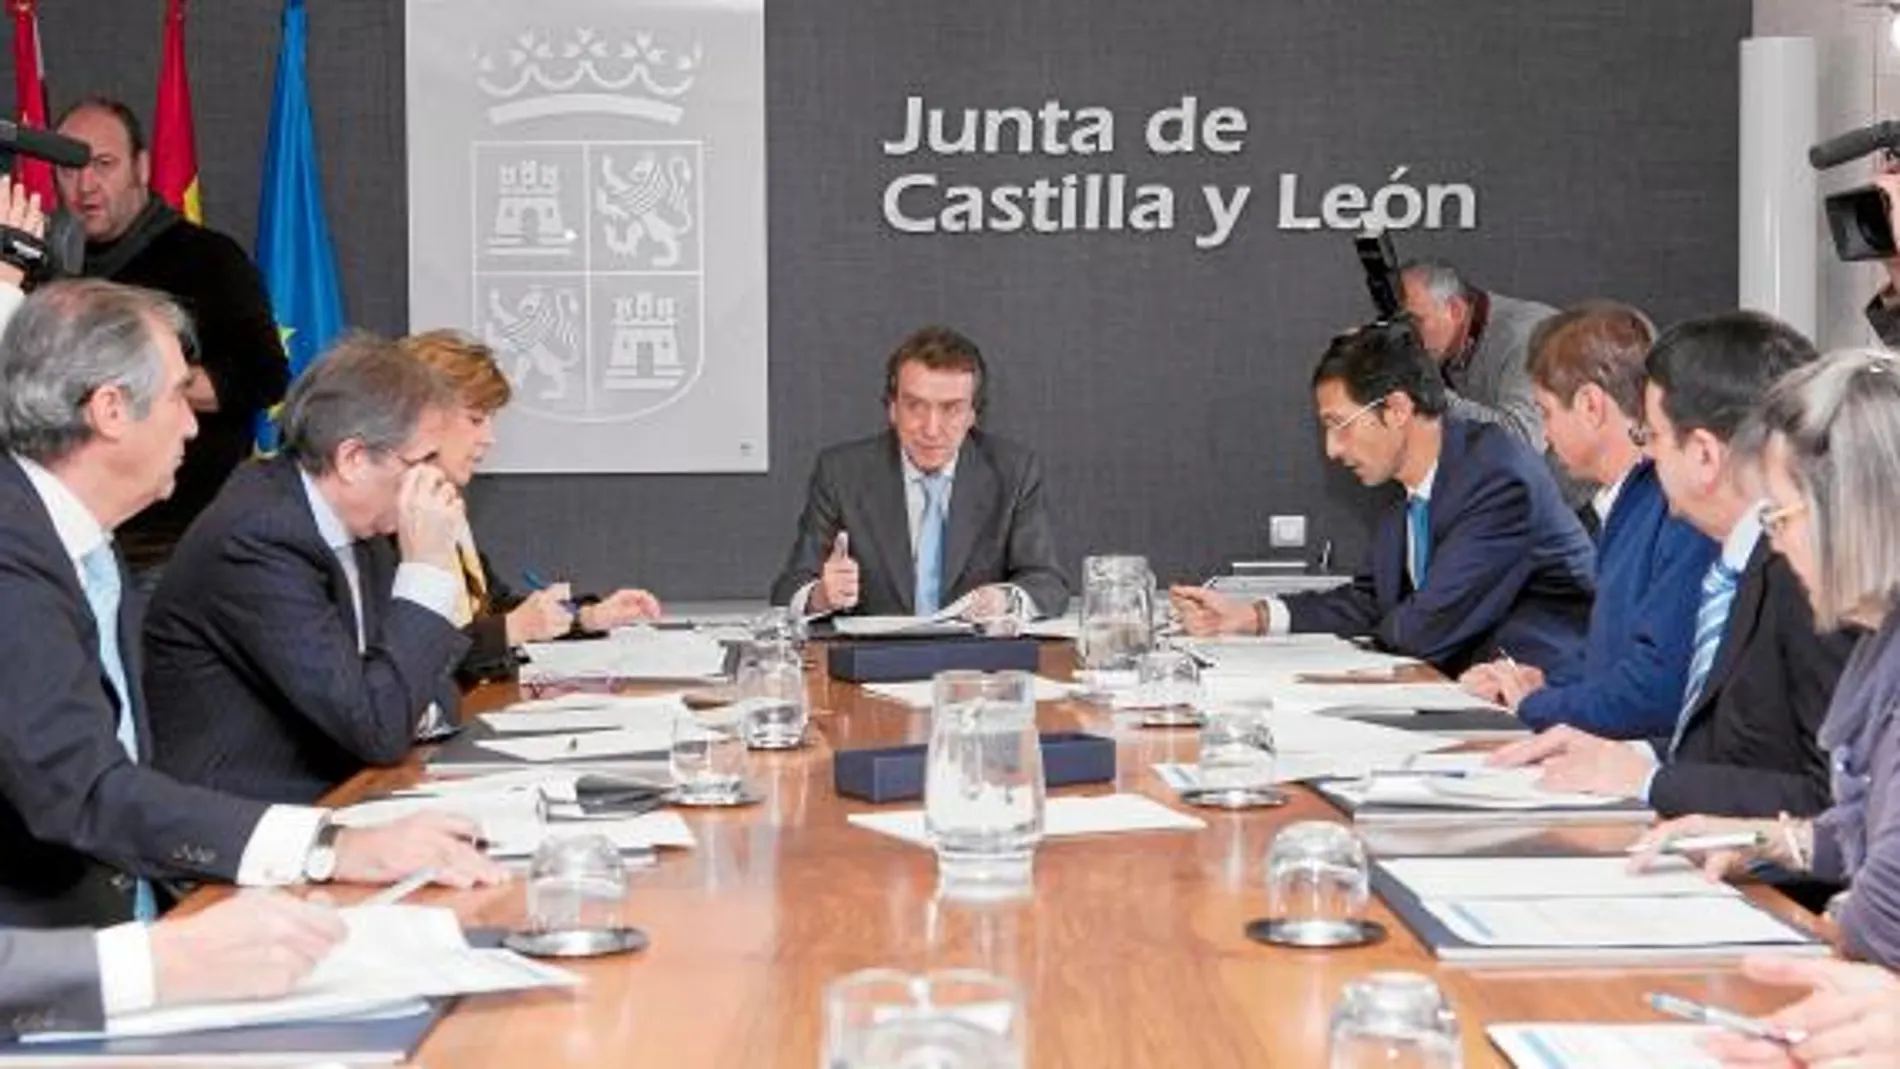 José Antonio de Santiago Juárez, María José Salgueiro e Ignacio Sáez durante el encuentro con representantes del sector judicial en Castilla y León